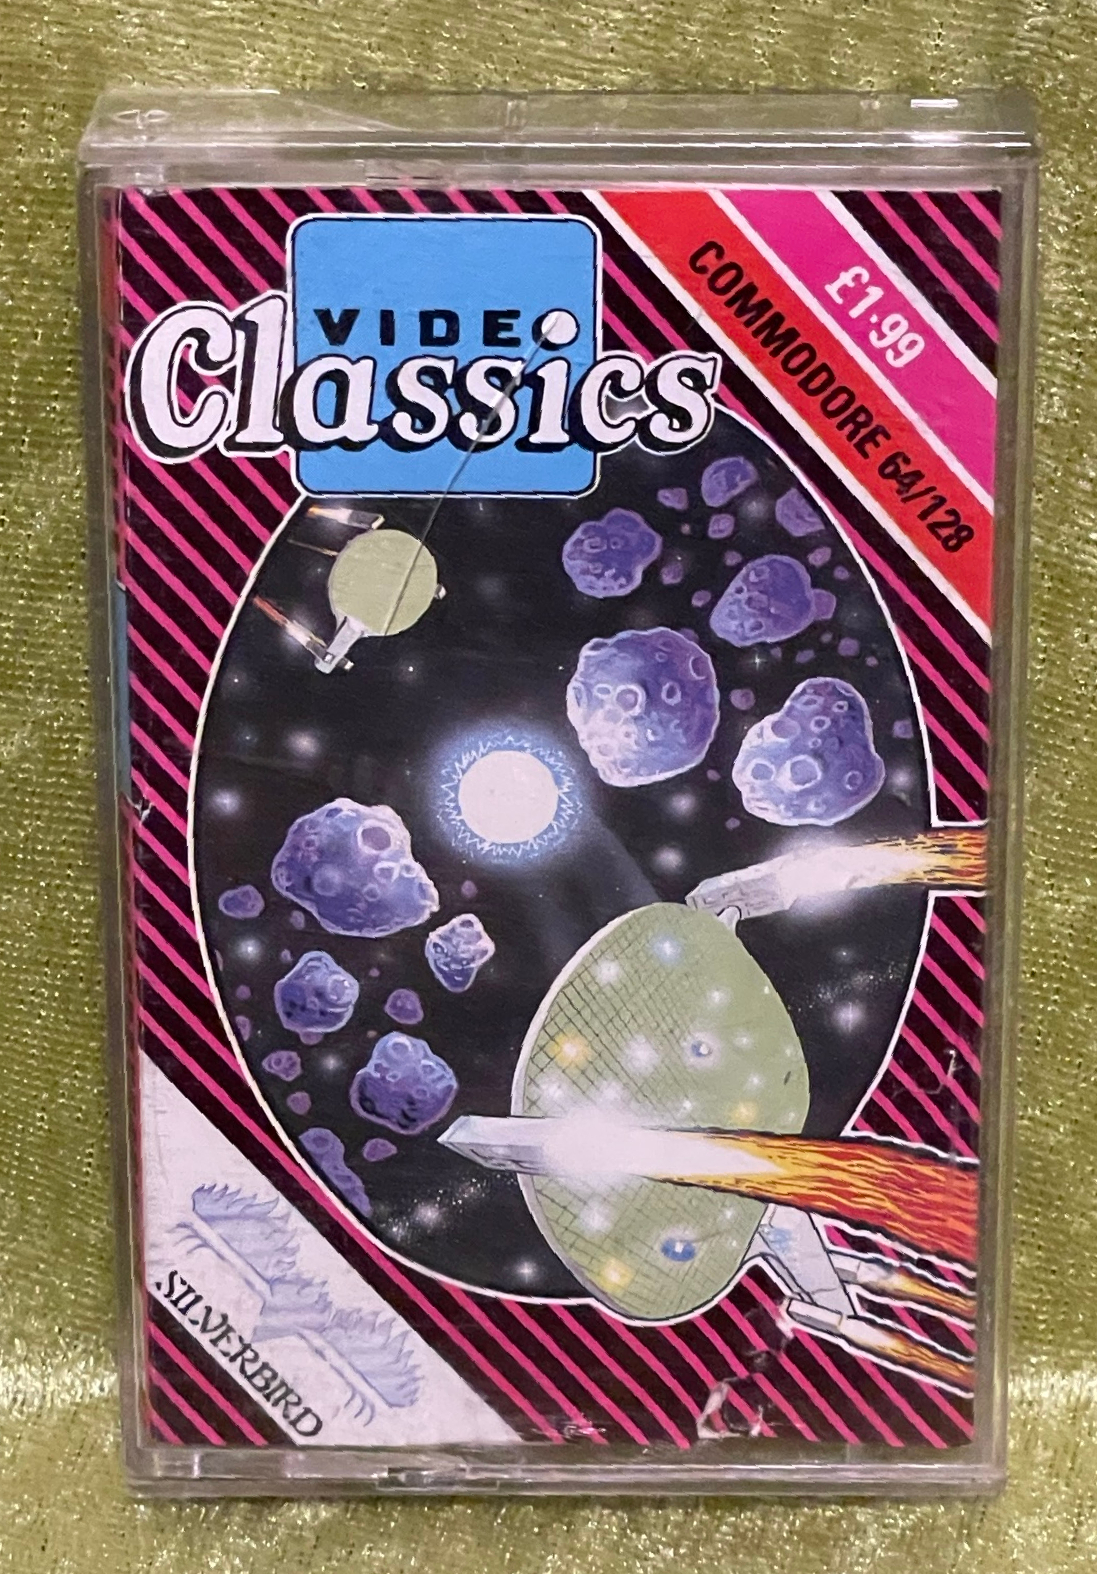 Video Classics